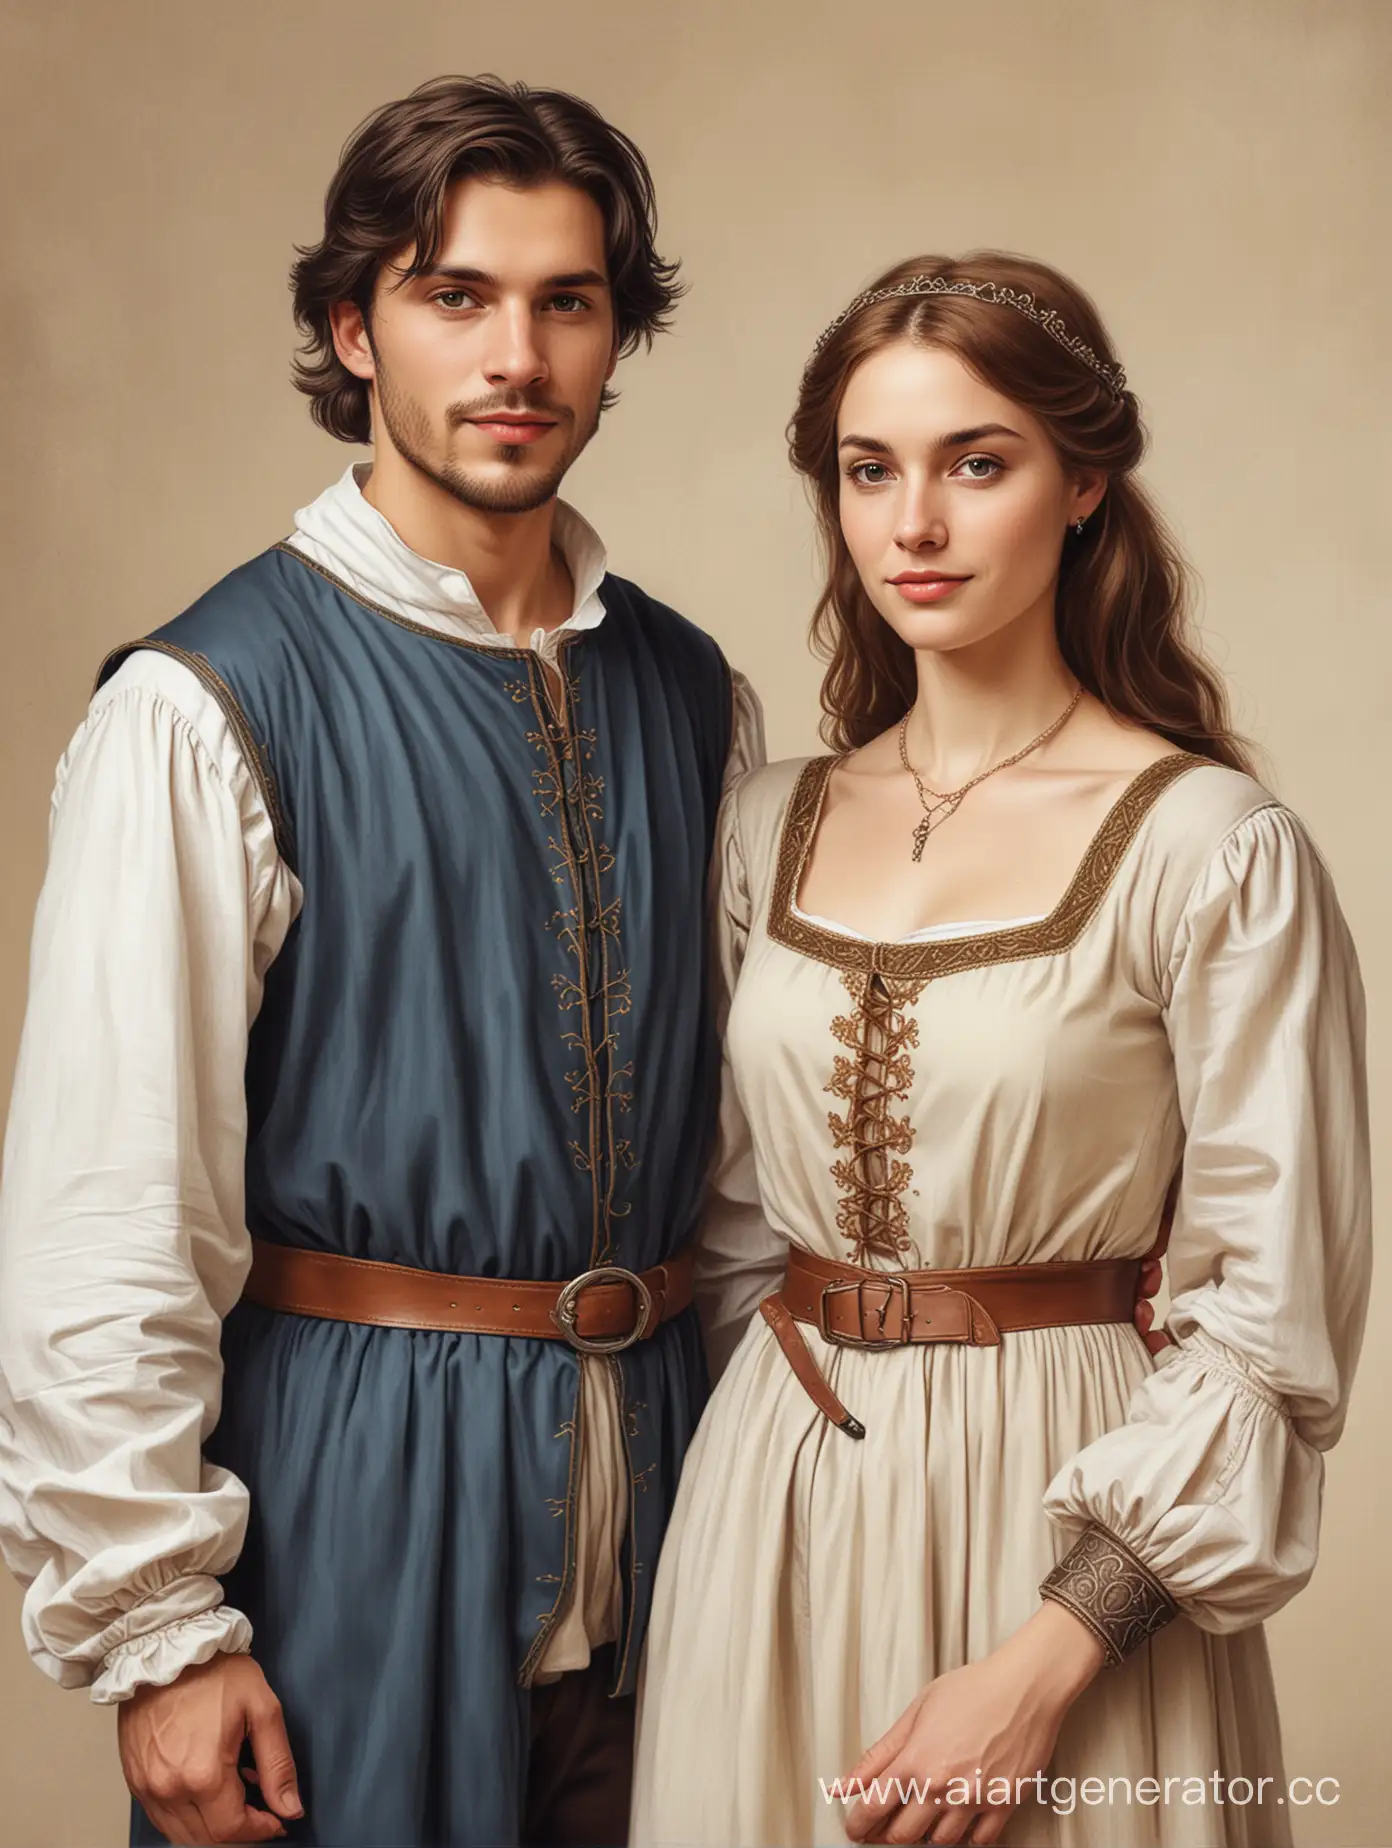 Близнецы, мужчина и женщина. Они одеты в простой средневековый костюм. Они выглядят непринуждённо. Рисунок